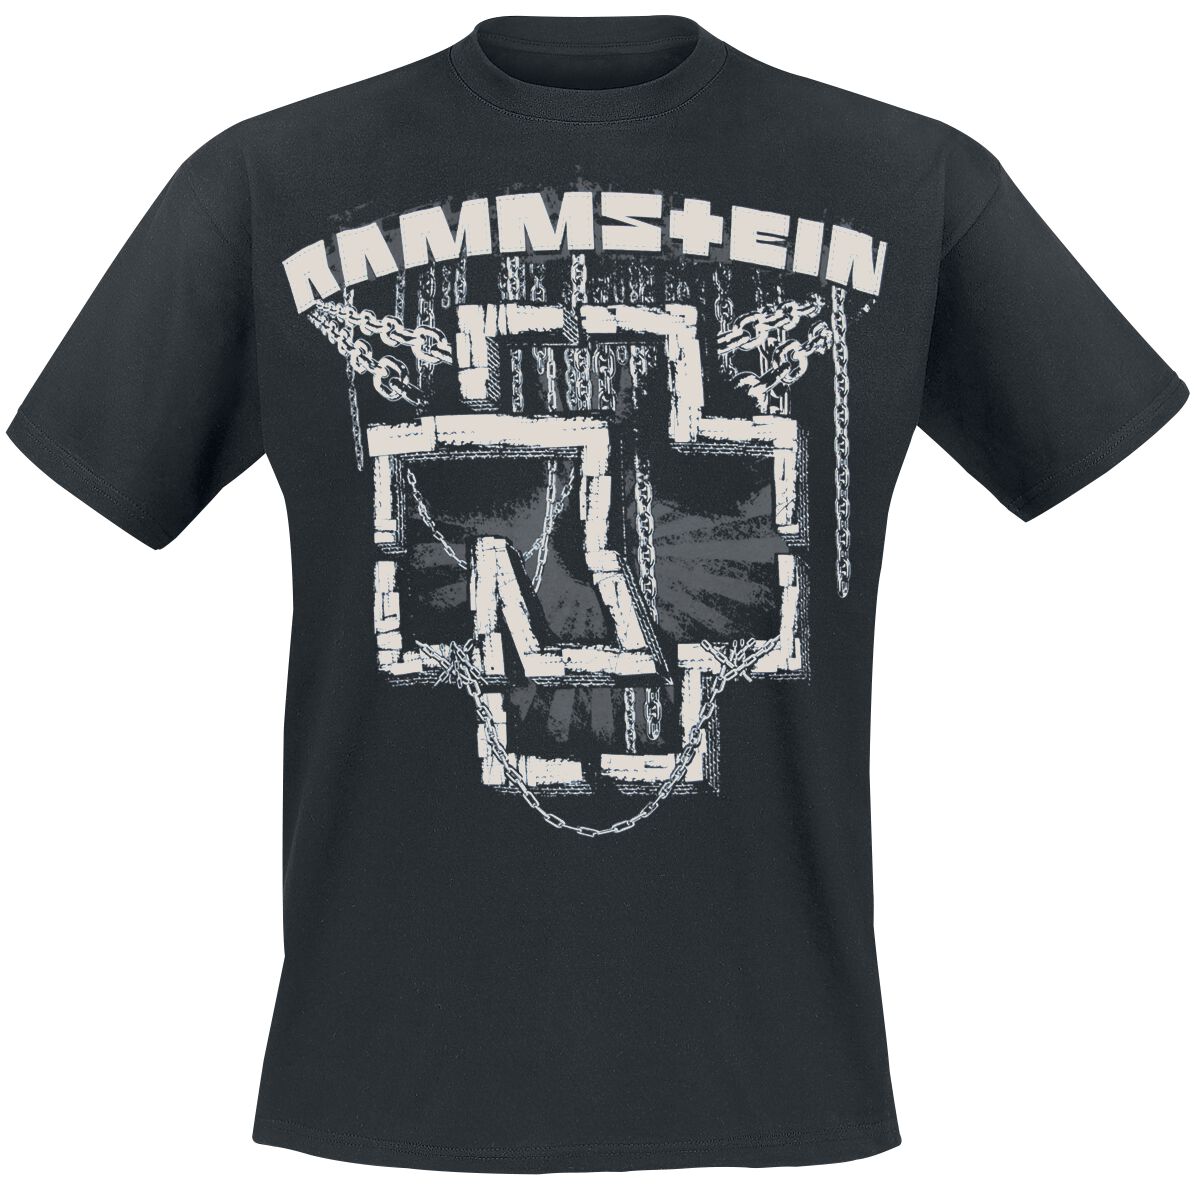 Rammstein T-Shirt - In Ketten - M bis 3XL - für Männer - Größe XL - schwarz  - Lizenziertes Merchandise!